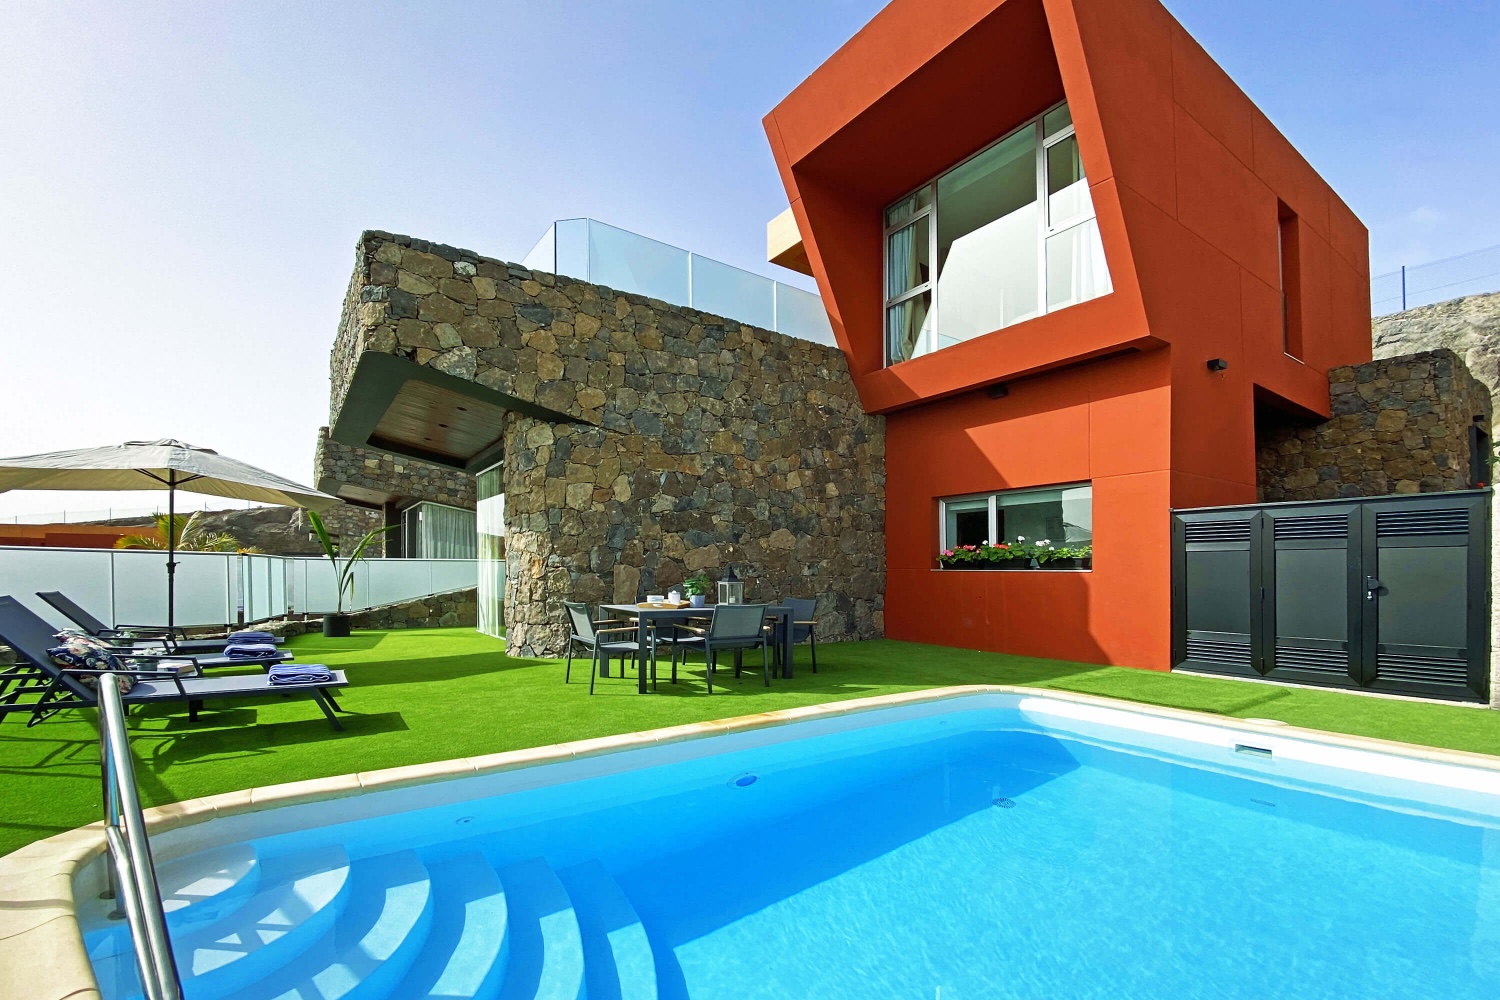 Moderne und helle Villa, komplett ausgestattet, perfekt, um das gute Wetter im Süden von Gran Canaria in einer einzigartigen Umgebung zu genießen.